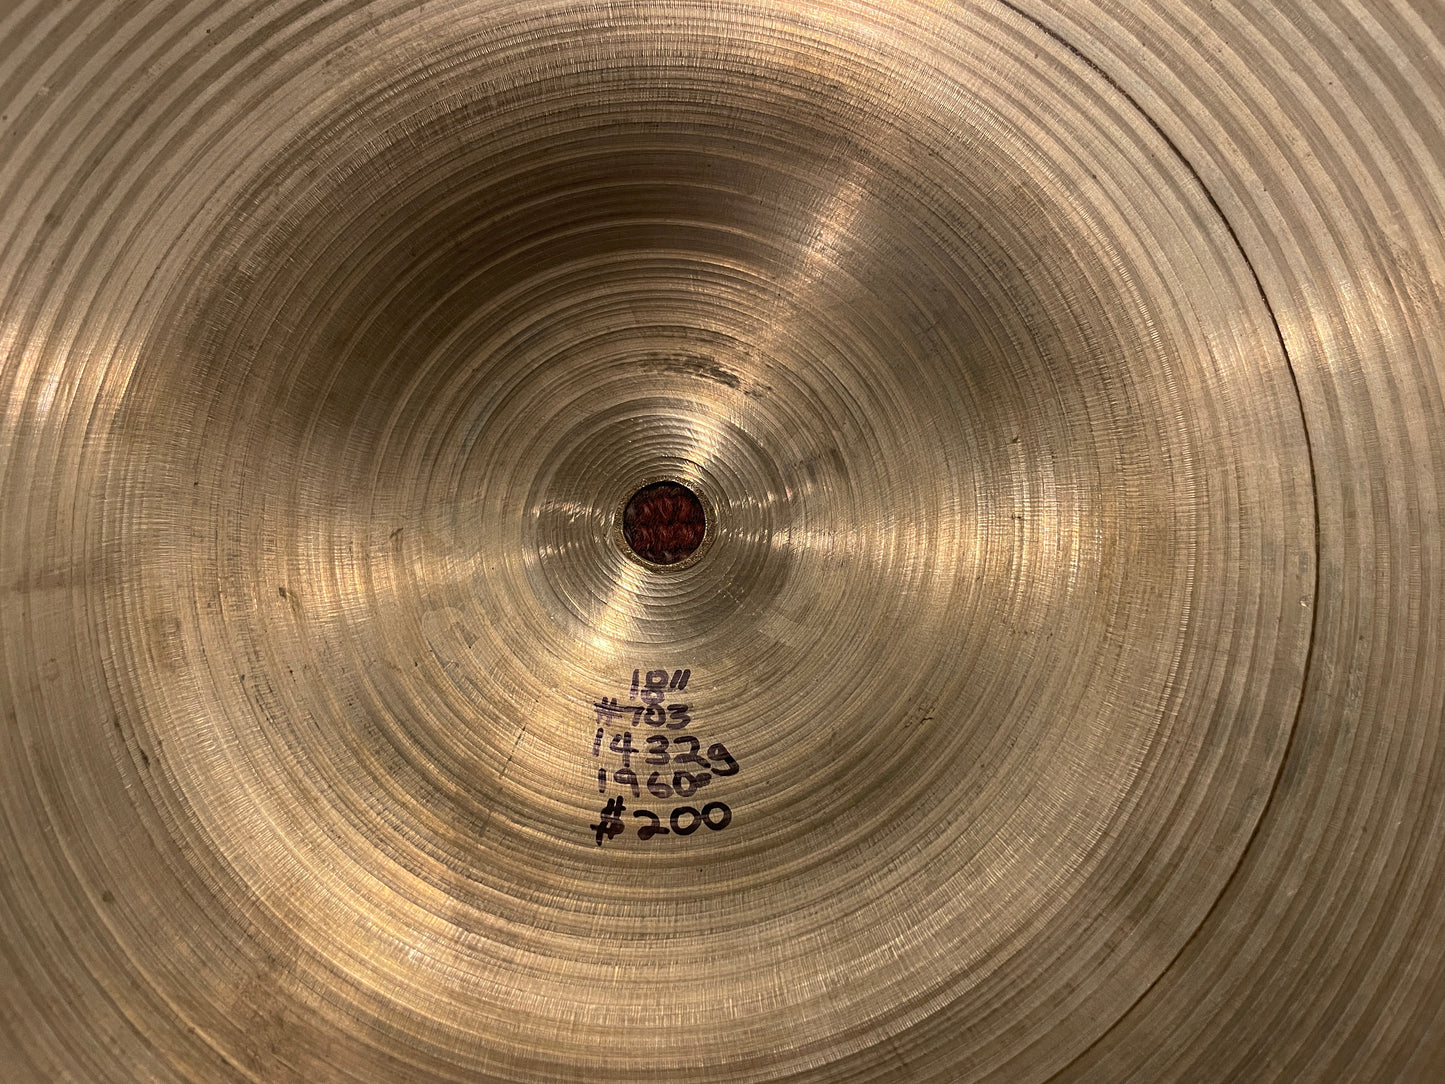 18" Zildjian A 1960s Crash / Ride Cymbal 1432g #703